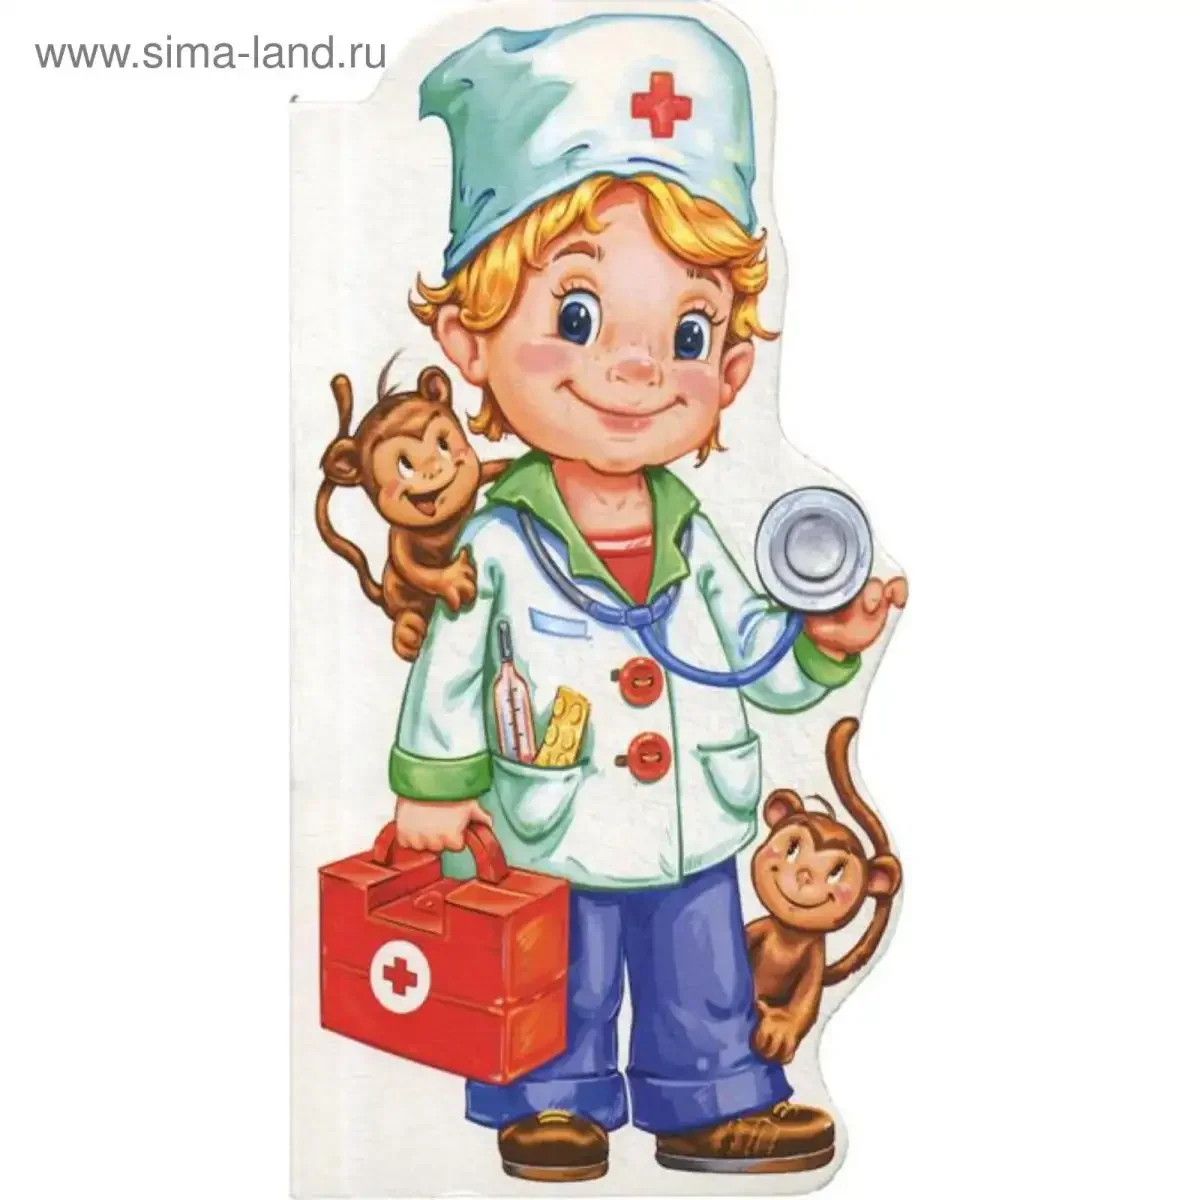 Профессия врач для детей